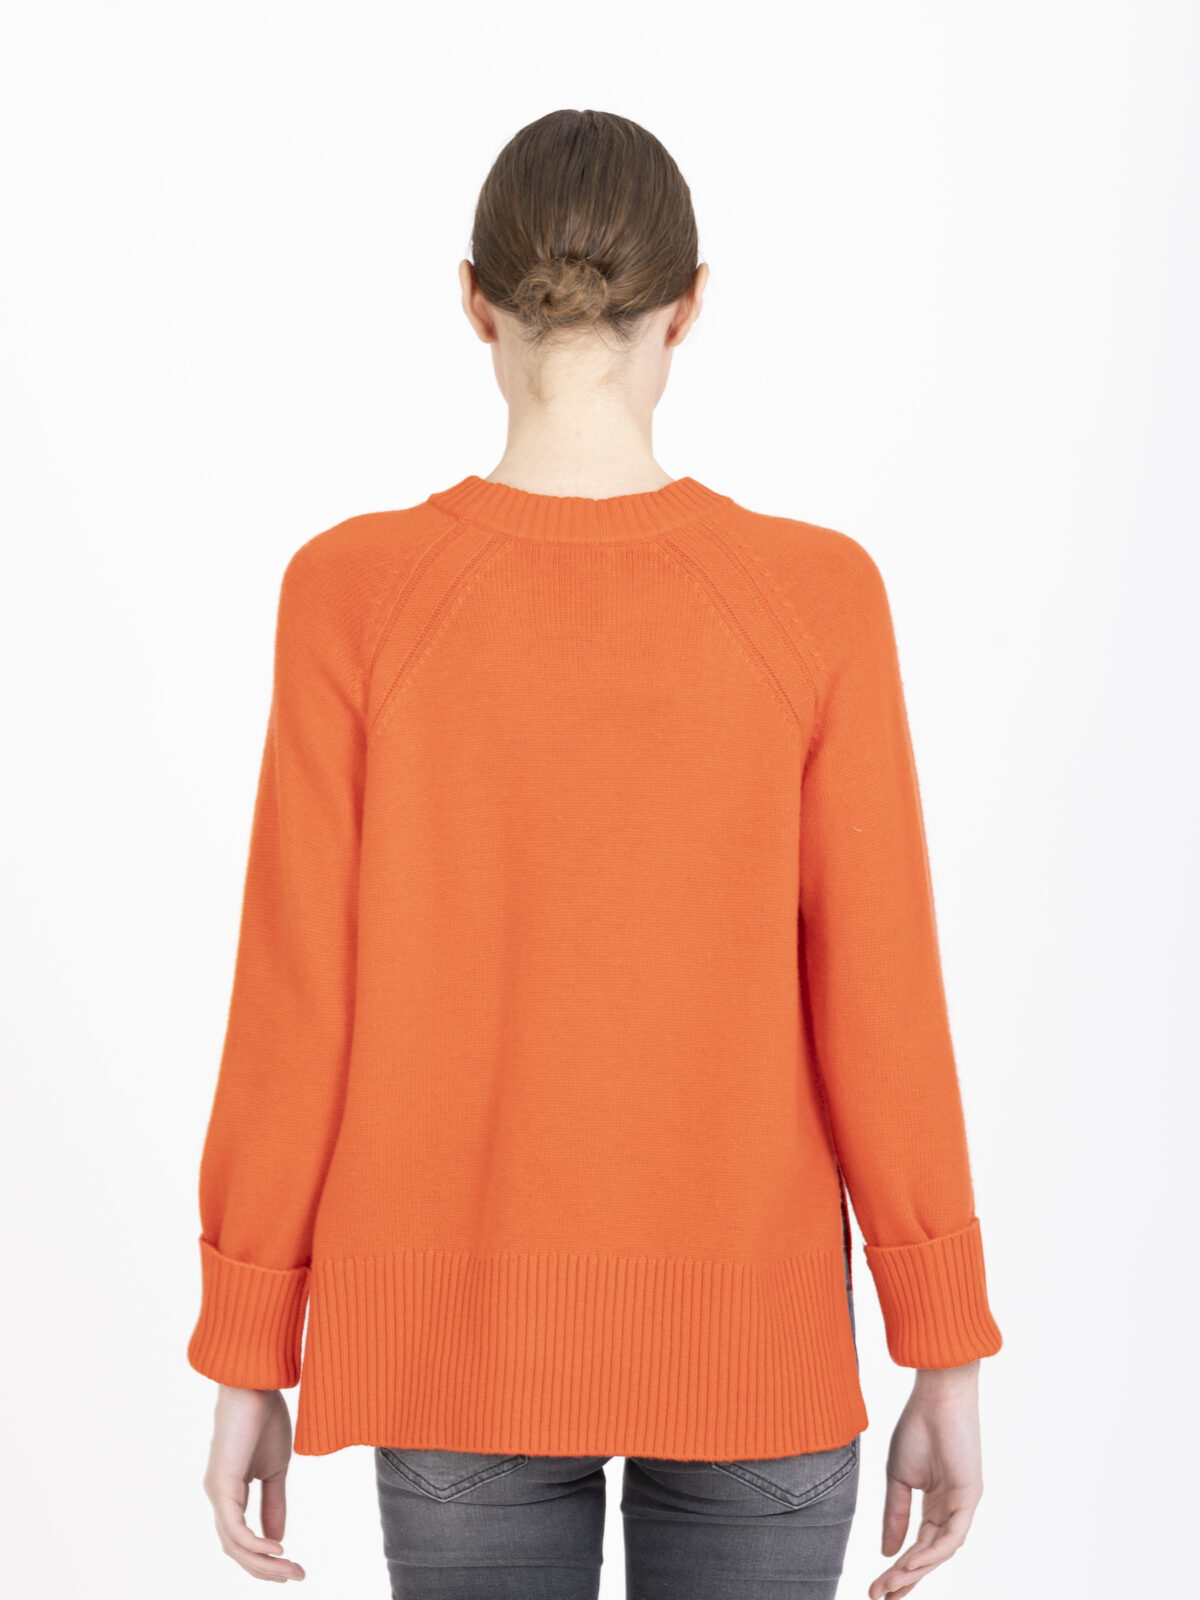 perino-wool-sweater-relaxed-orange-ribbed-suncoo-matchboxathens